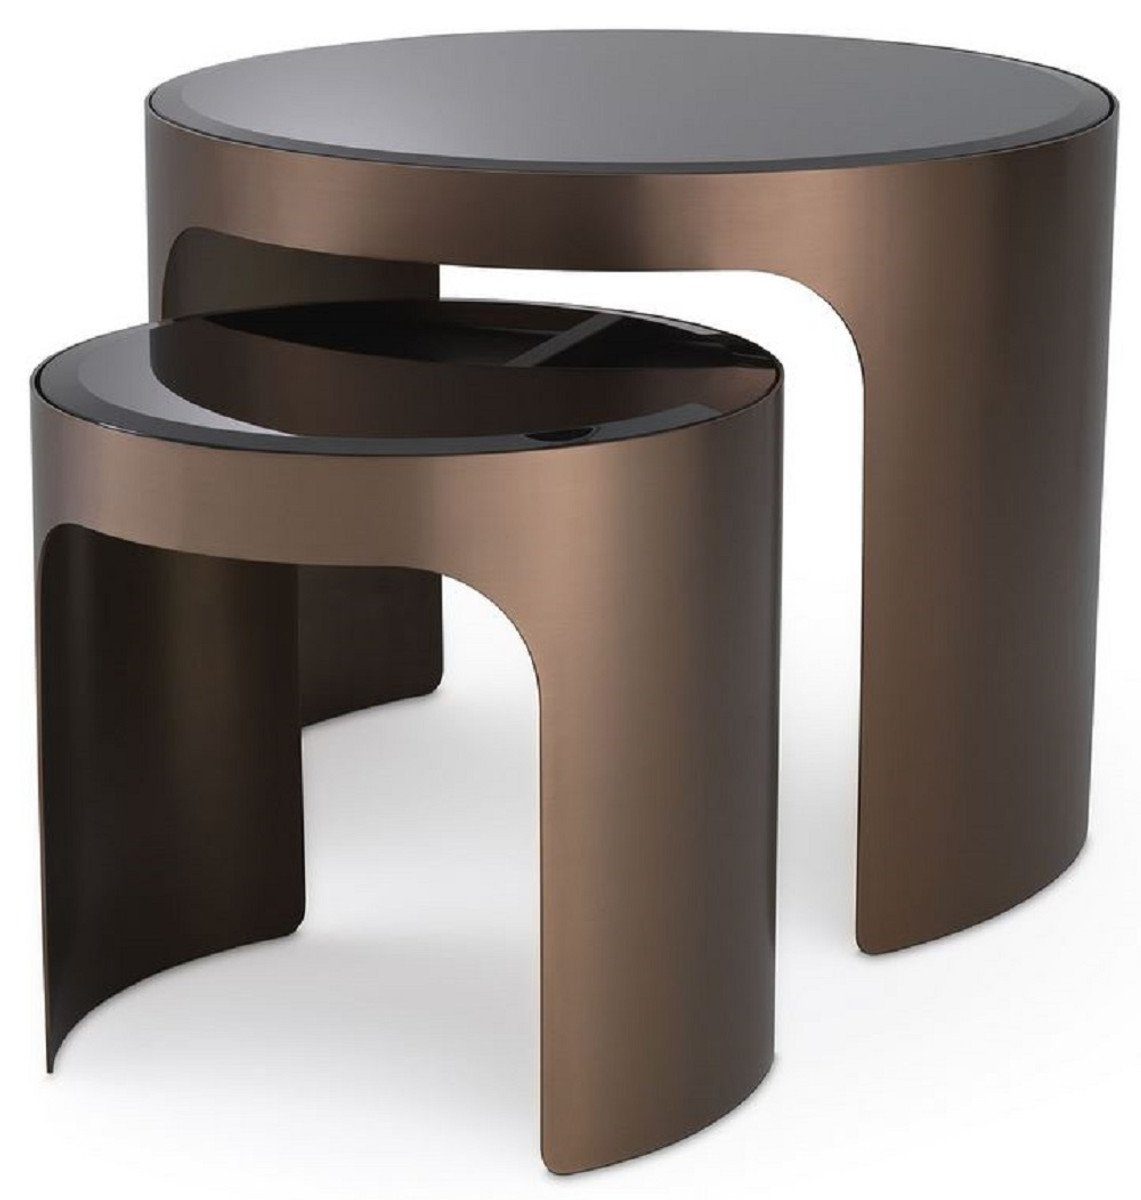 Casa Padrino Beistelltisch Luxus Beistelltisch Set Kupferfarben / Schwarz - 2 runde Edelstahl Tische mit abgeschrägten Glasplatten - Luxus Möbel